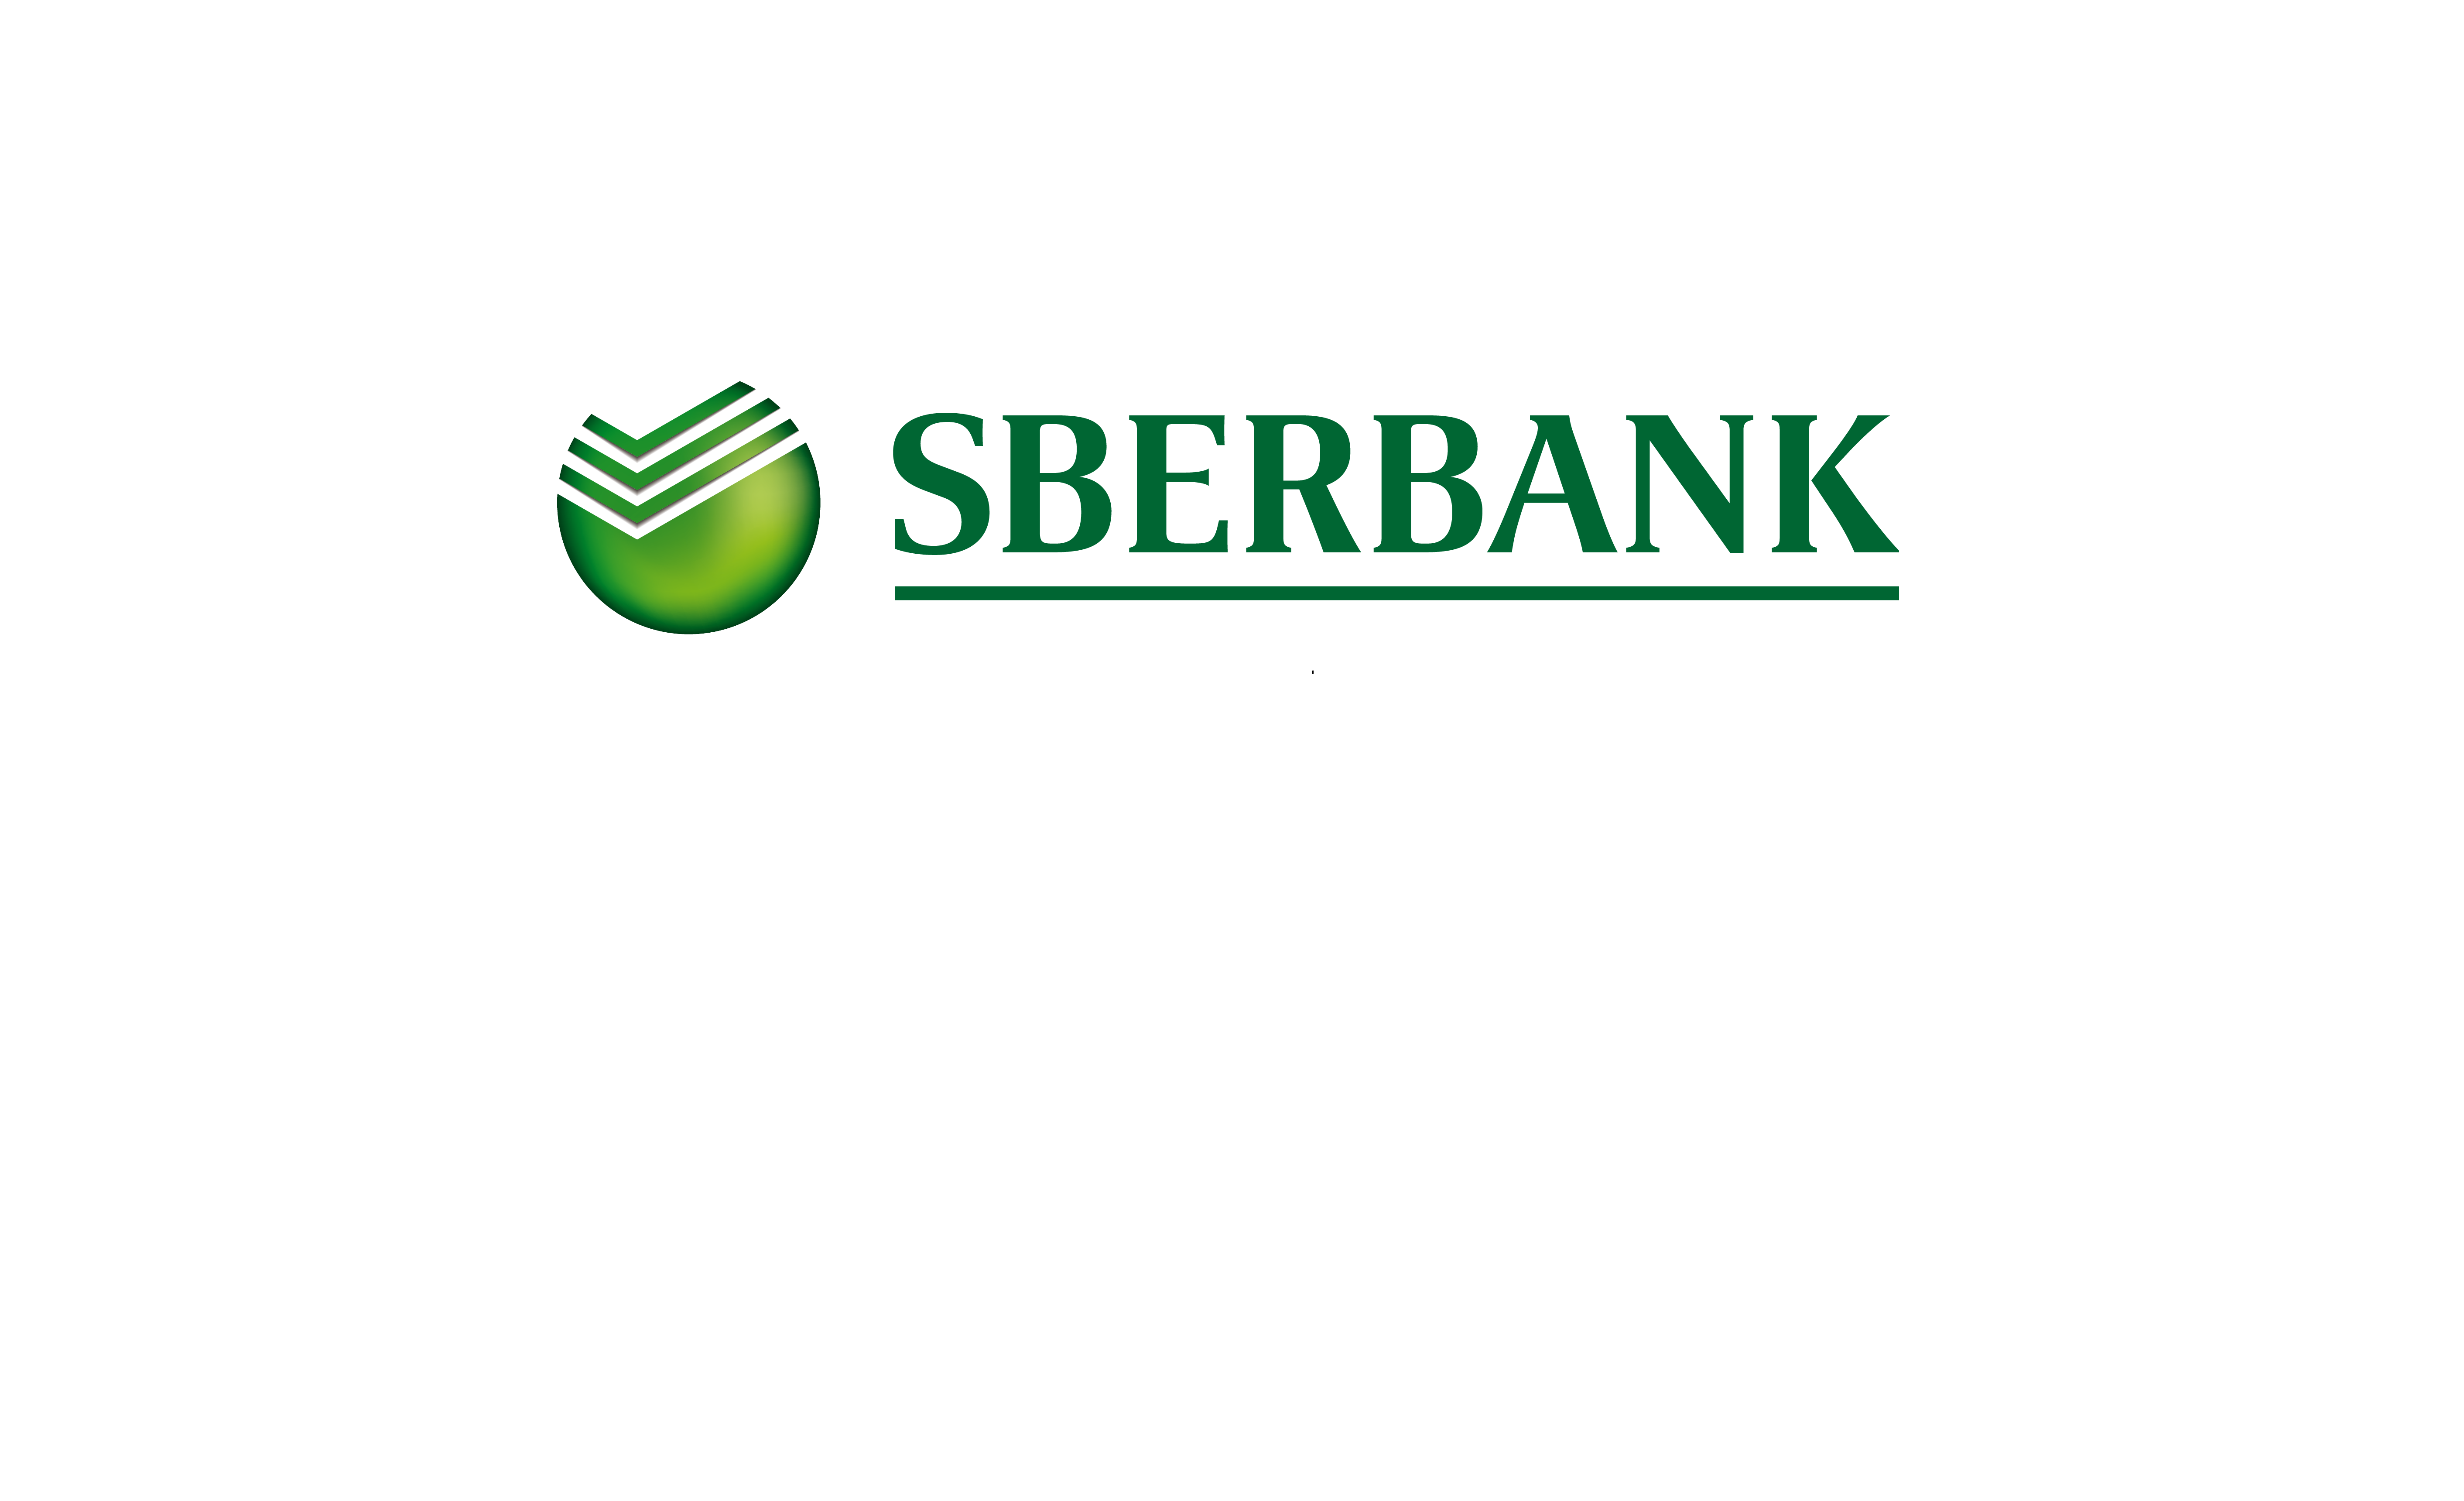 Sberbank type. Сбербанк управление активами лого. Сбертянн. Сбербанк всегда рядом. Надпись Сбербанк.